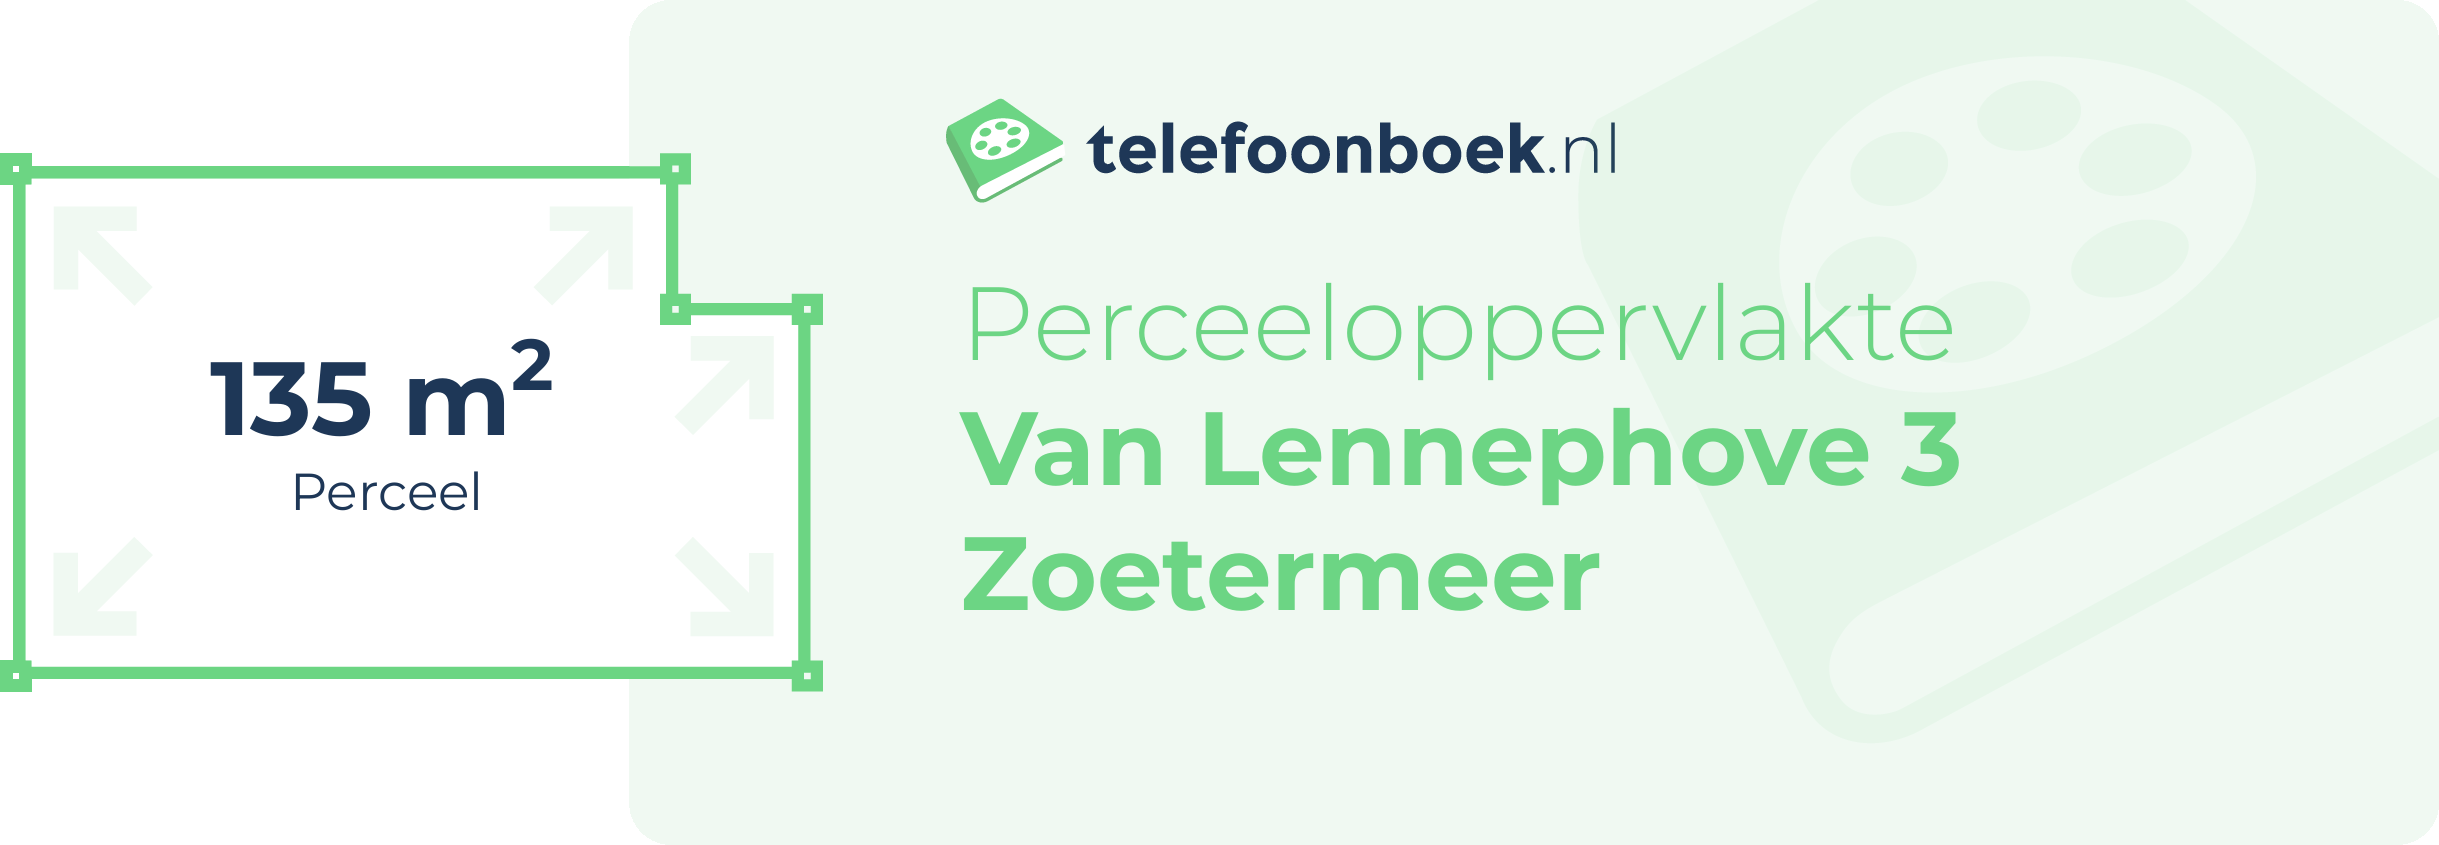 Perceeloppervlakte Van Lennephove 3 Zoetermeer